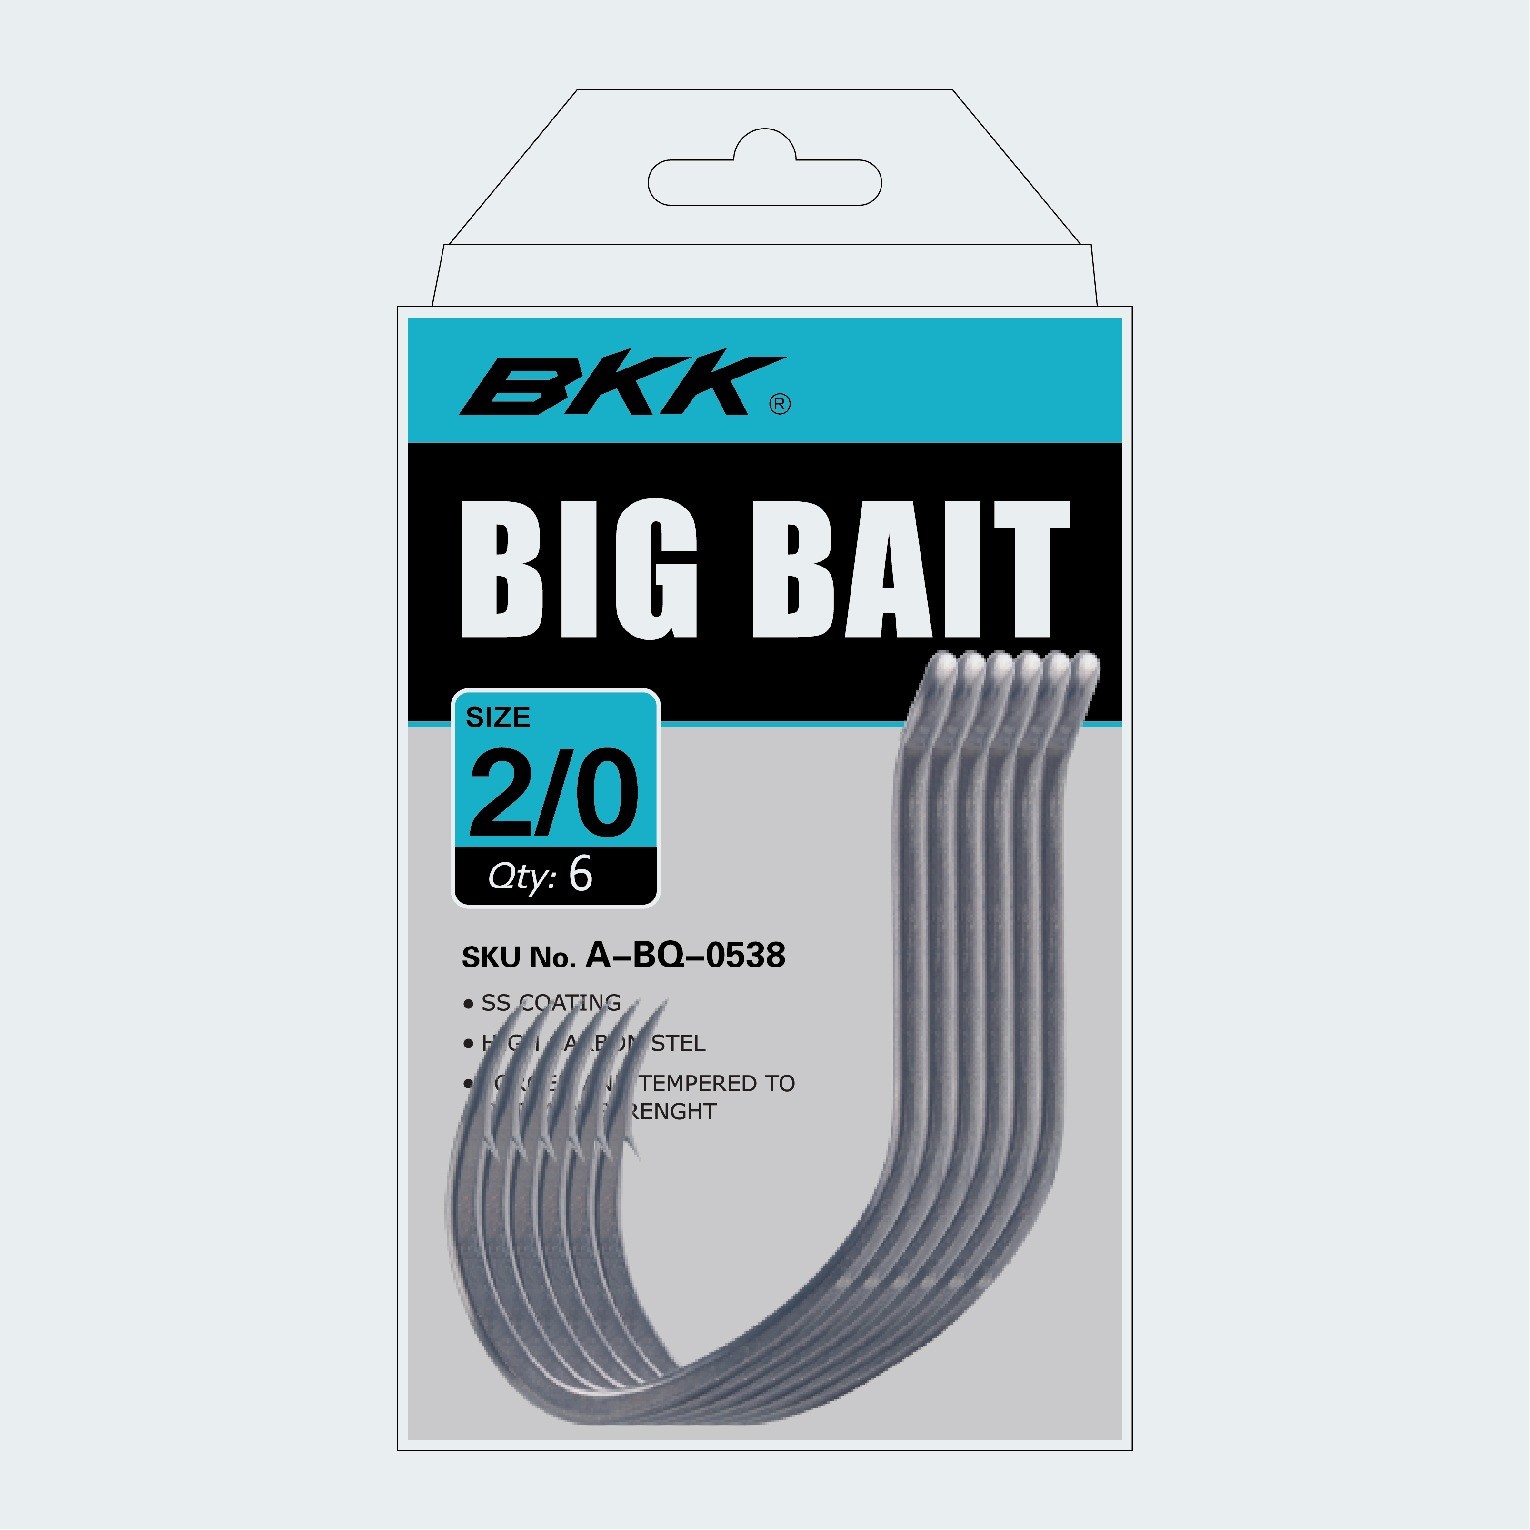 BKK Big Bait Hooks - The Bait Shop Gold Coast